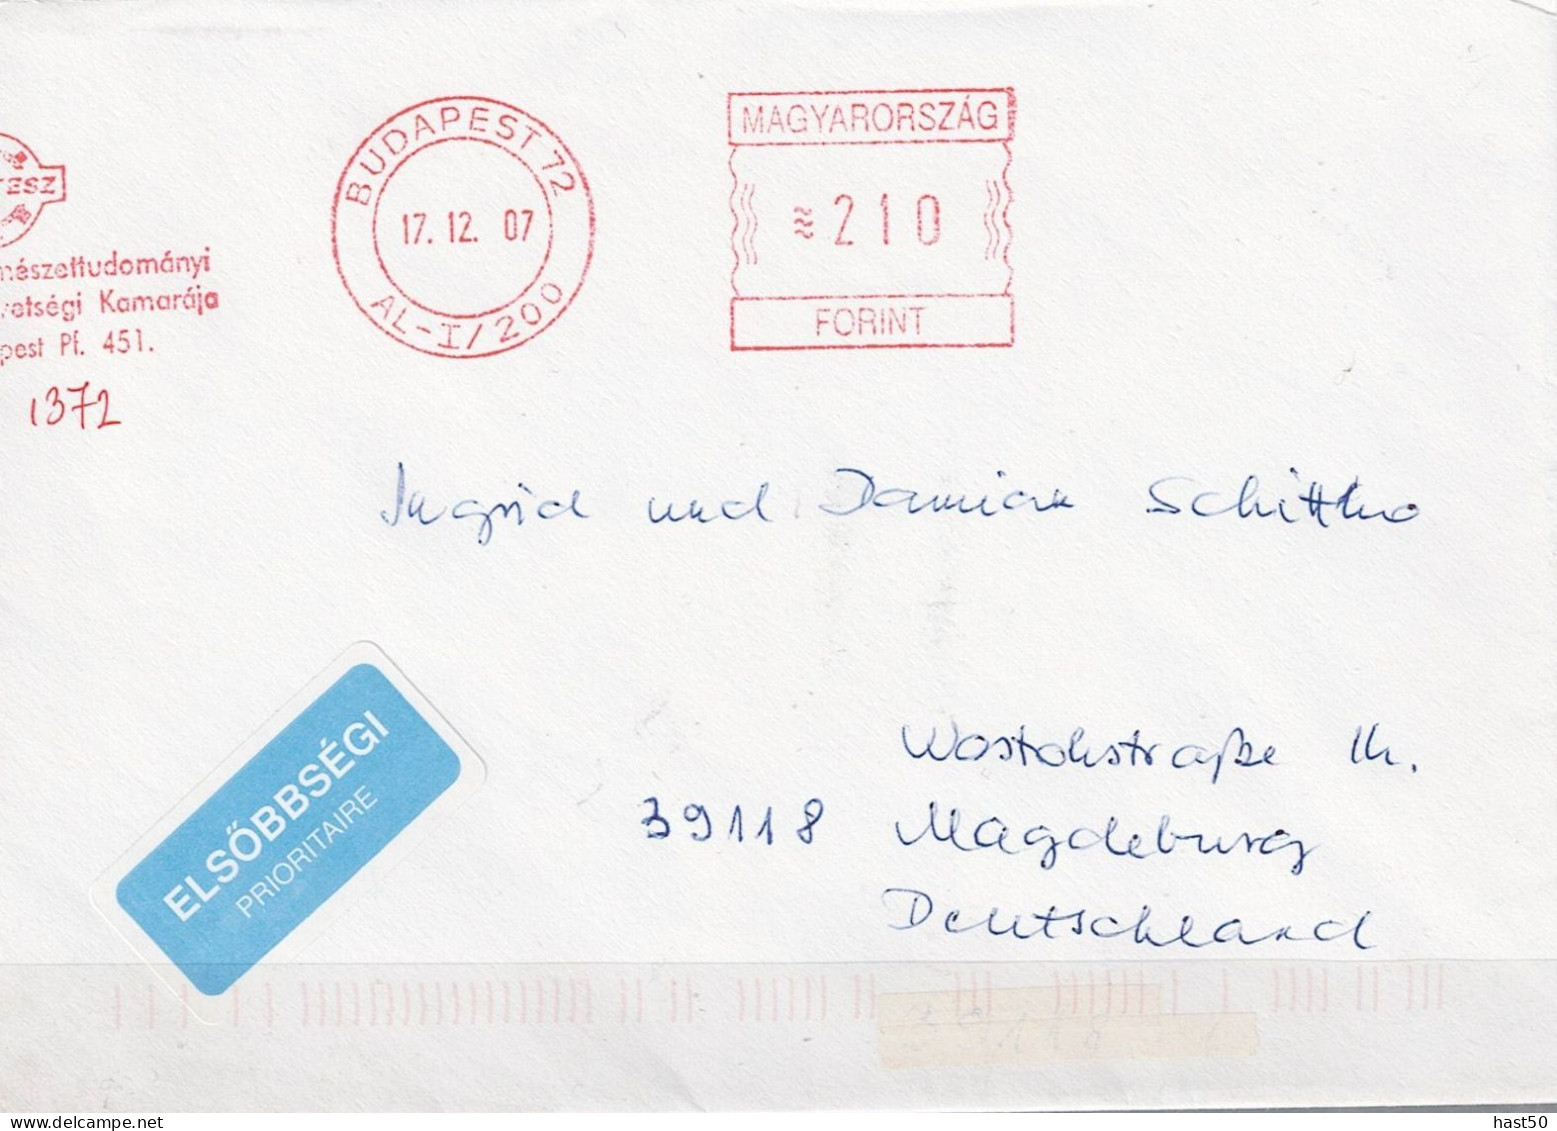 Ungarn Hungary Hongrie - Brief Mit Maschinenwerbestempel MTESZ Budapest Vom 17.12.07 Nach Magdeburg - Hojas Completas